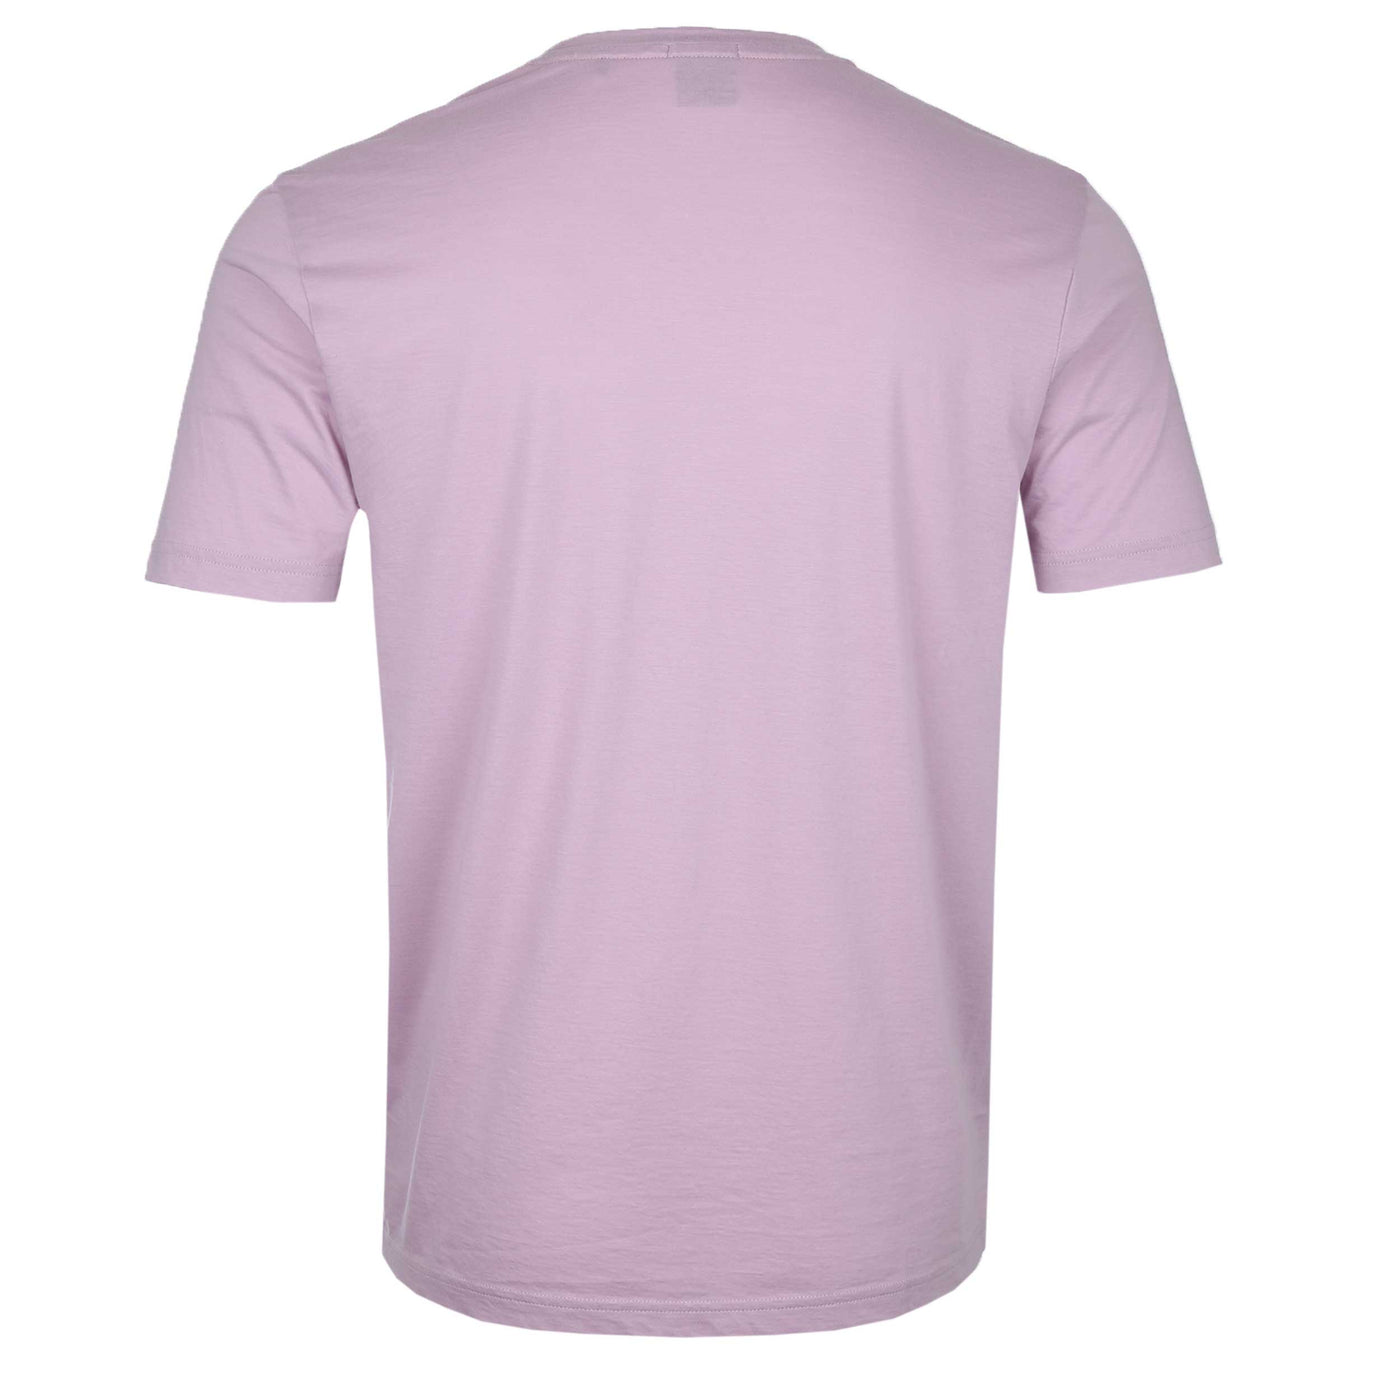 BOSS Teetaste T Shirt in Pastel Purple